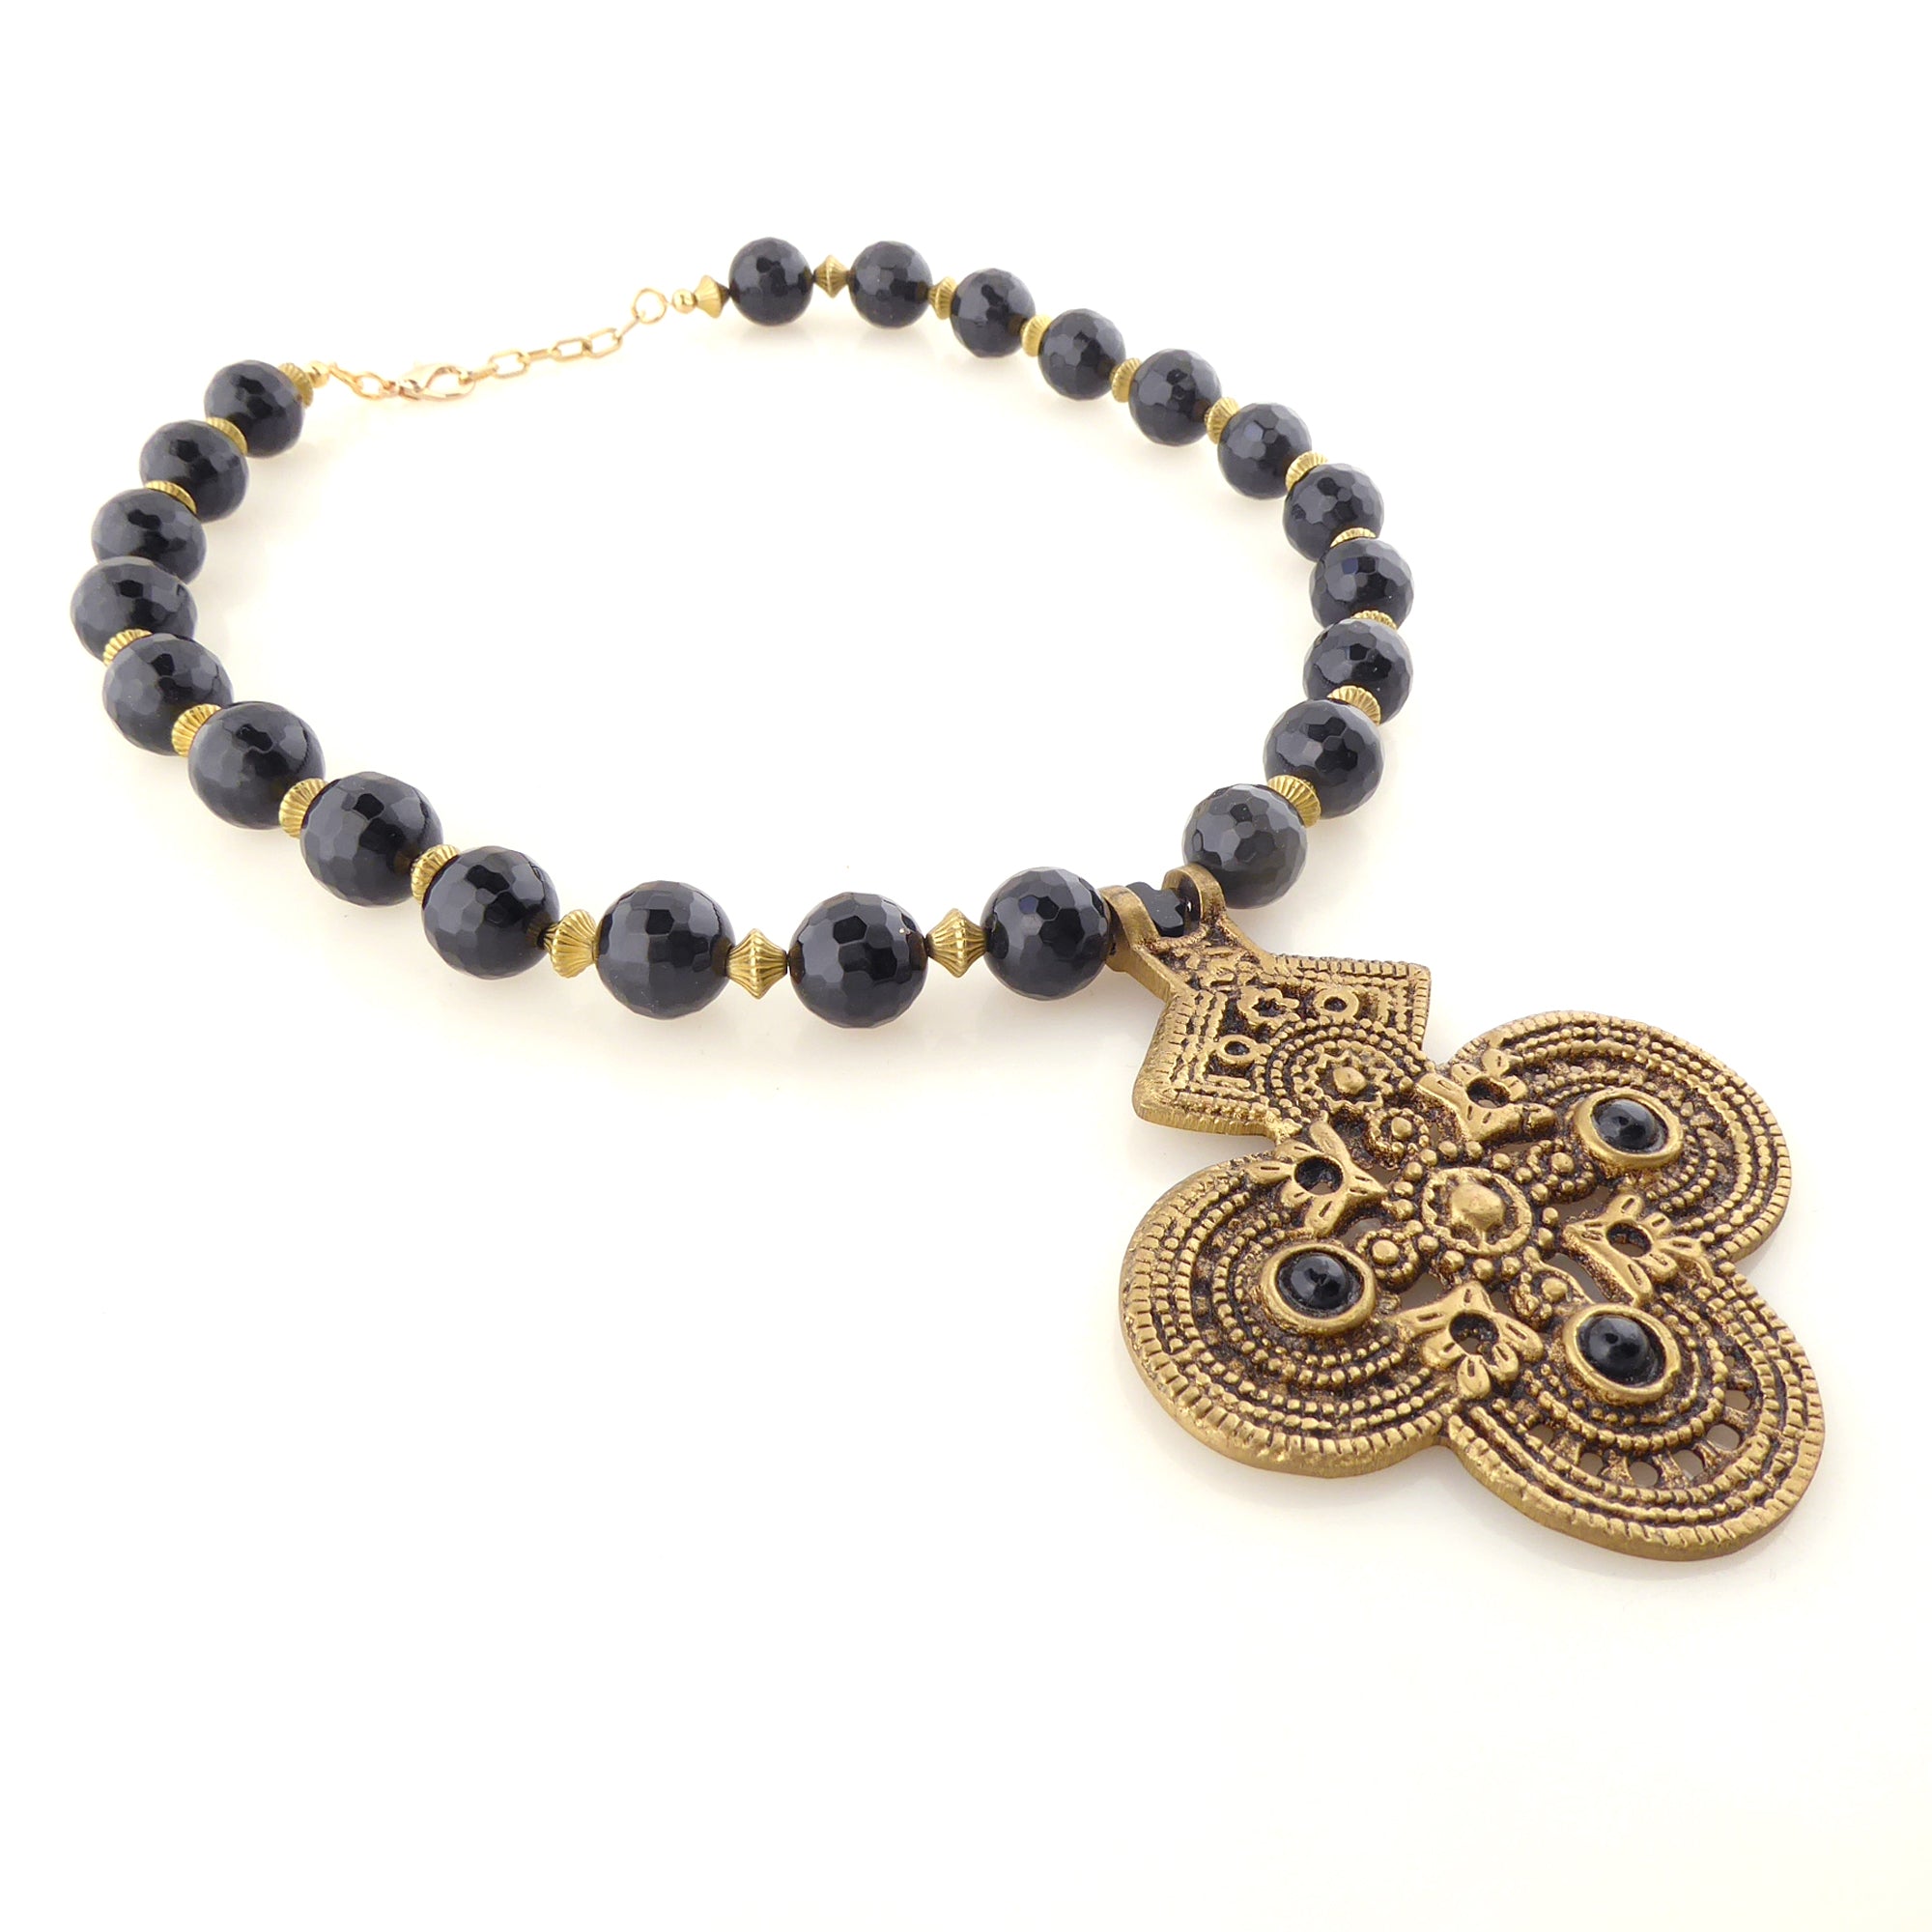 Black onyx and brass cross necklace by Jenny Dayco 2